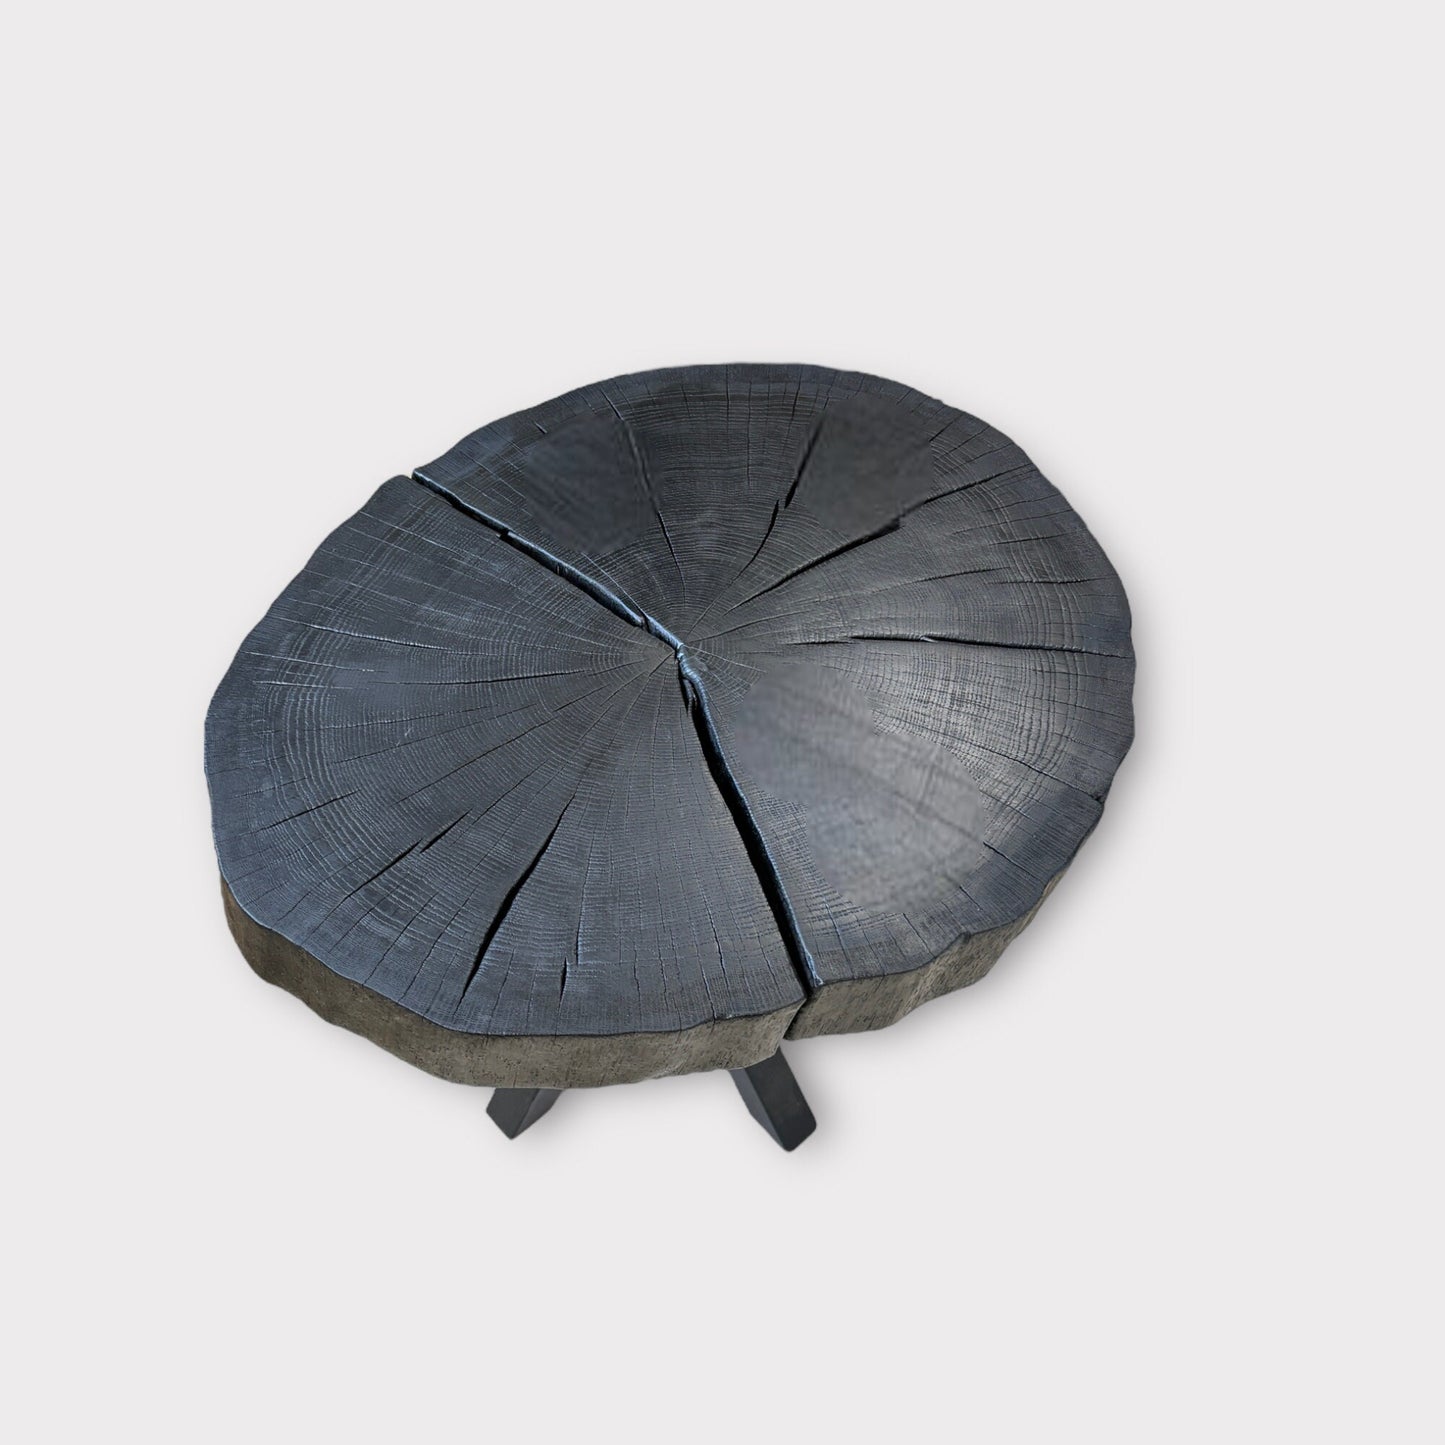 Furniture round table oak Black modern verbrannt verkohlt Coffeetable Massivholz Couchtisch Sofatisch Laptoptisch